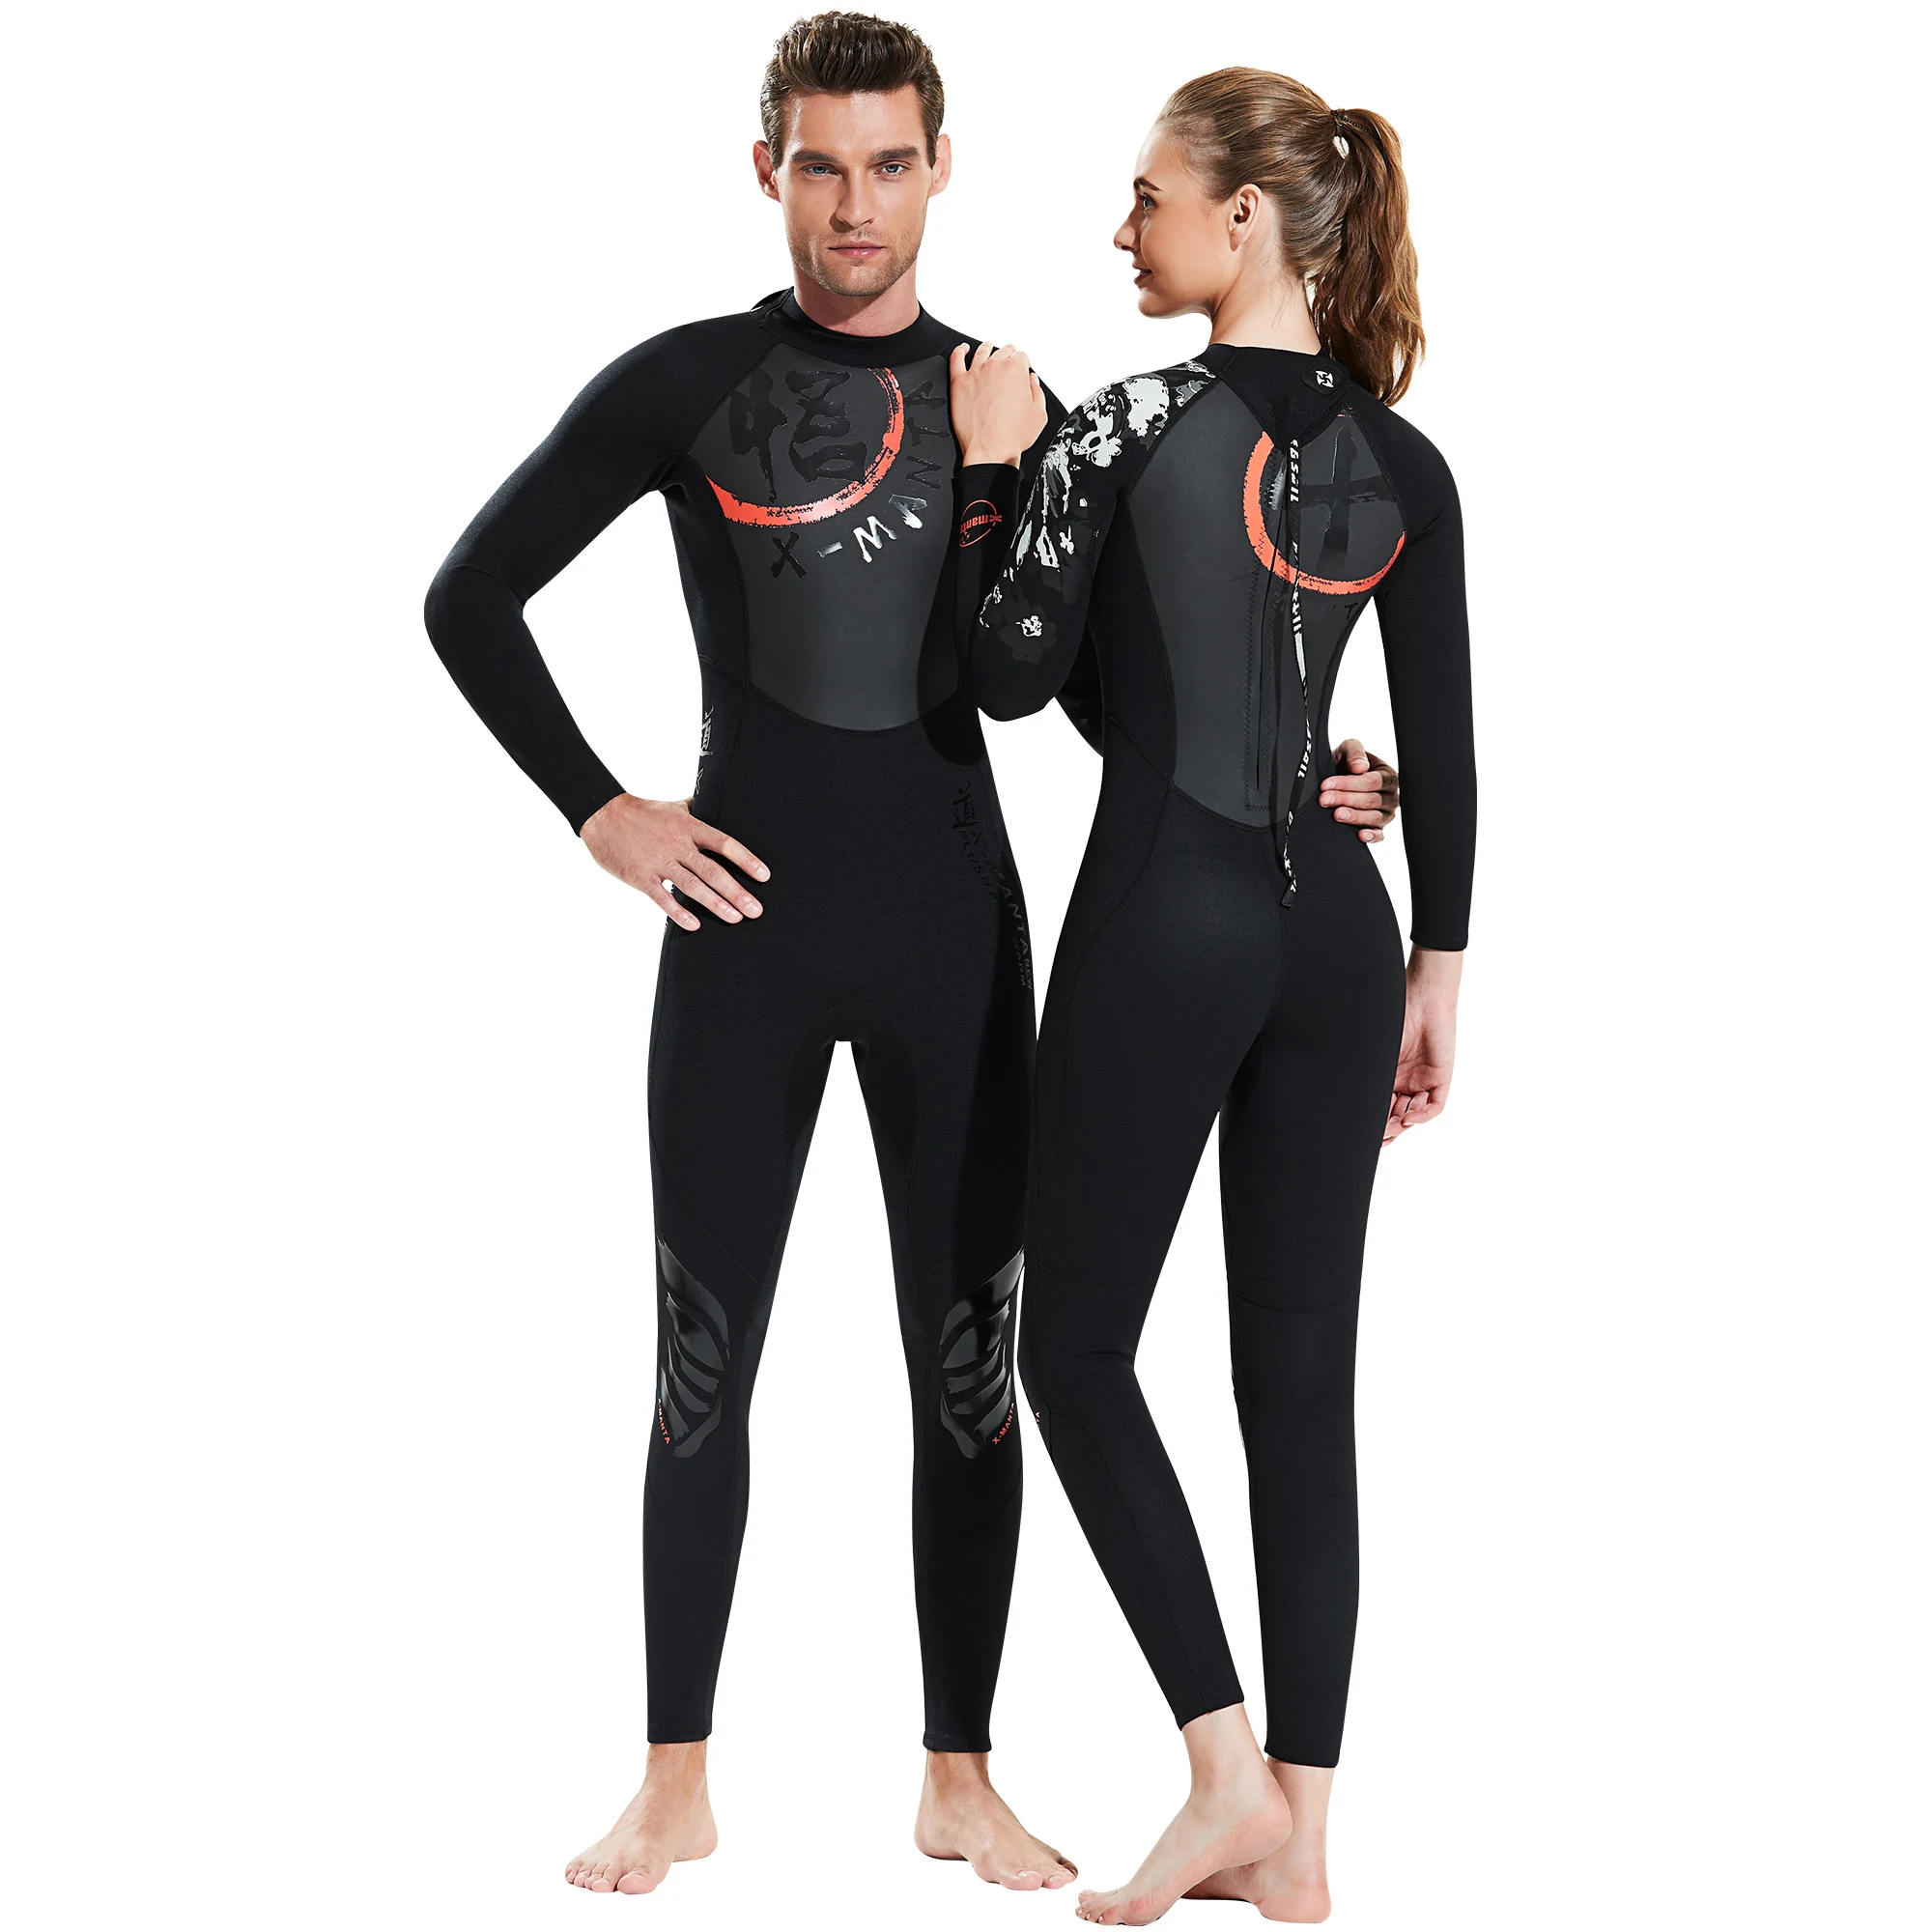 Fullbody 1,5 мм мокрый костюм для серфинга, китайский гидрокостюм с принтом для мужчин и женщин, неопрен+ кожа акулы, купальный костюм для подводного плавания и подводного плавания